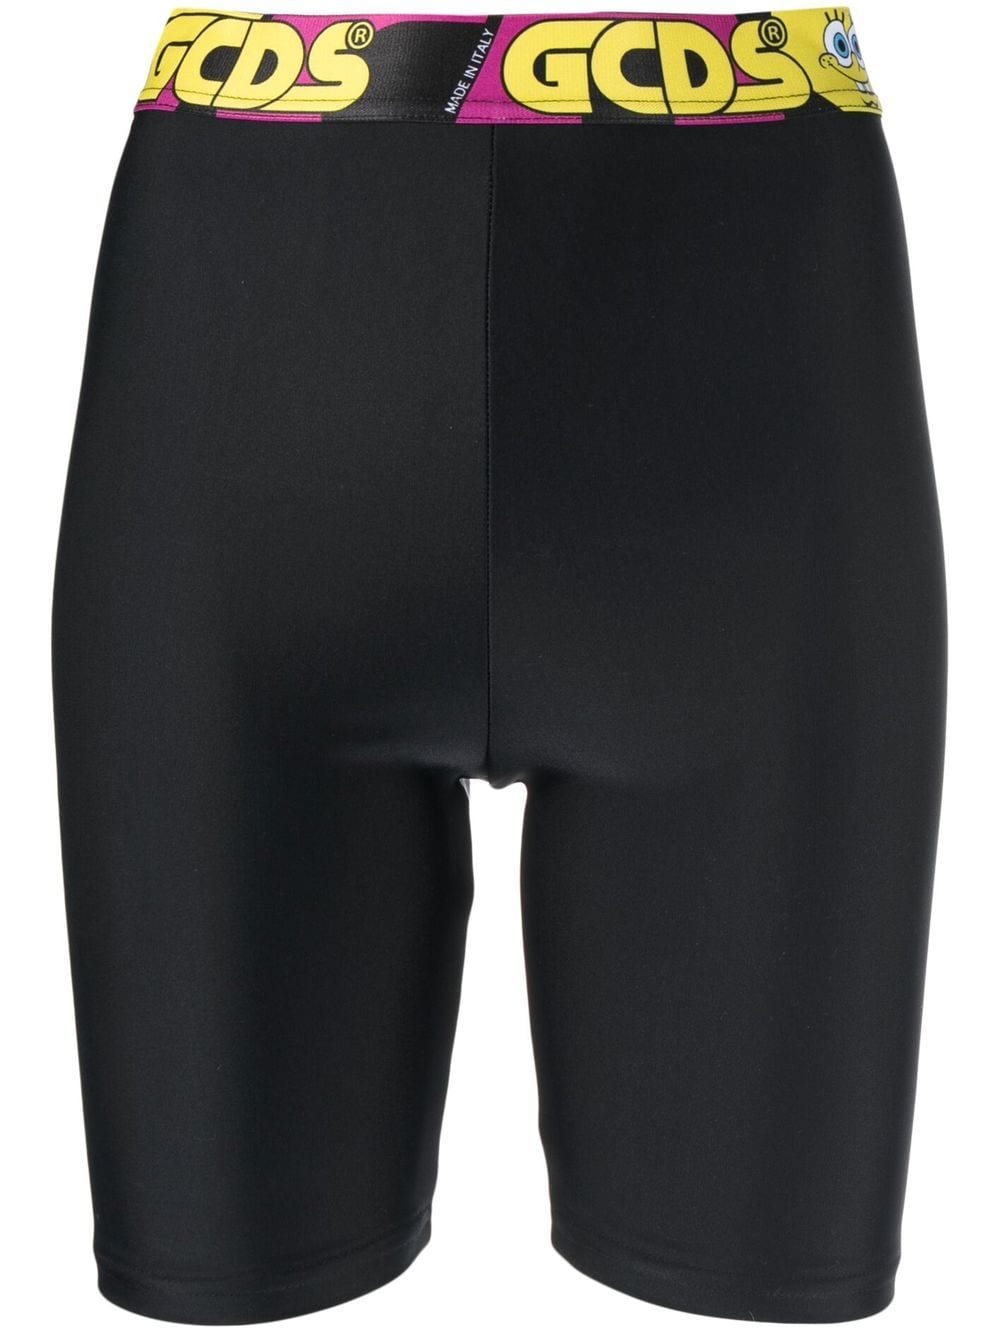 Gcds knee-high legging shorts - Black von Gcds